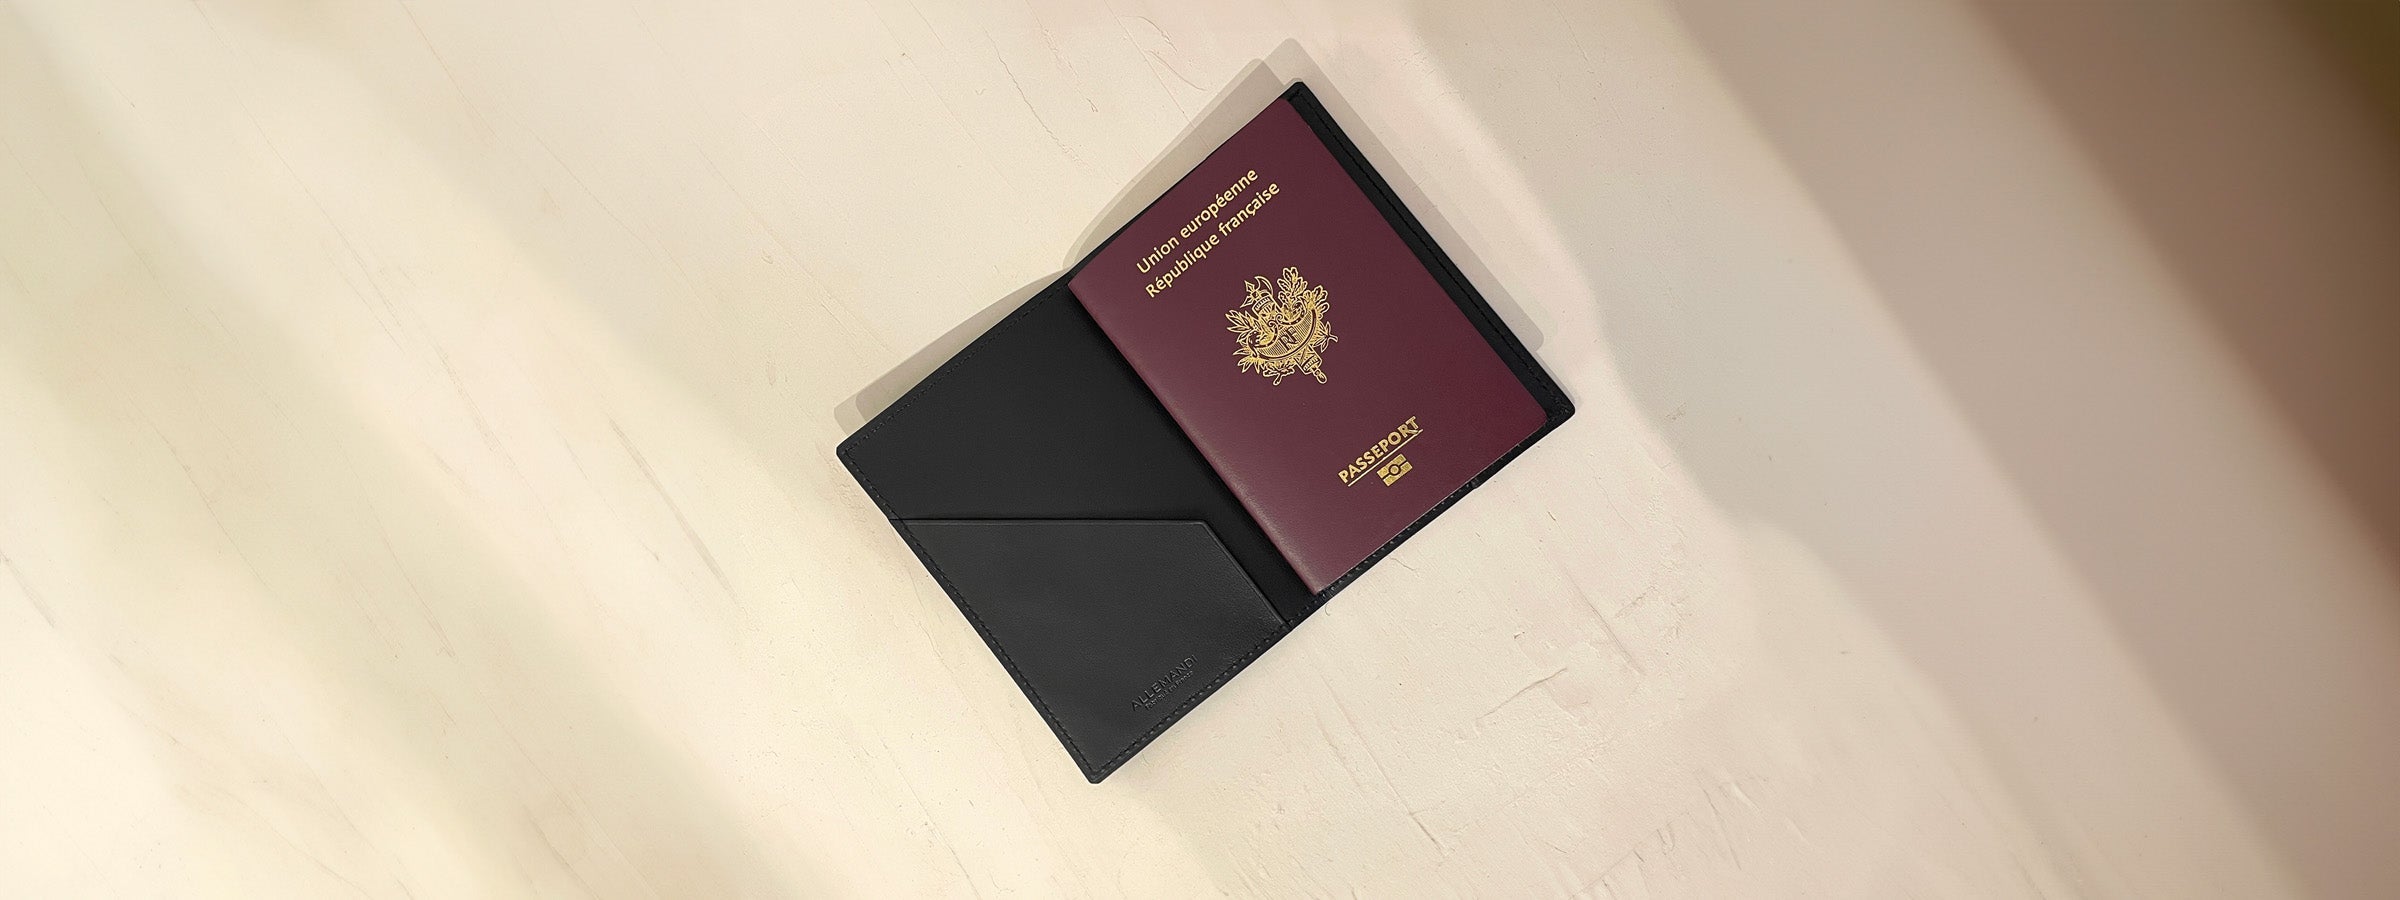 Le porte-passeport